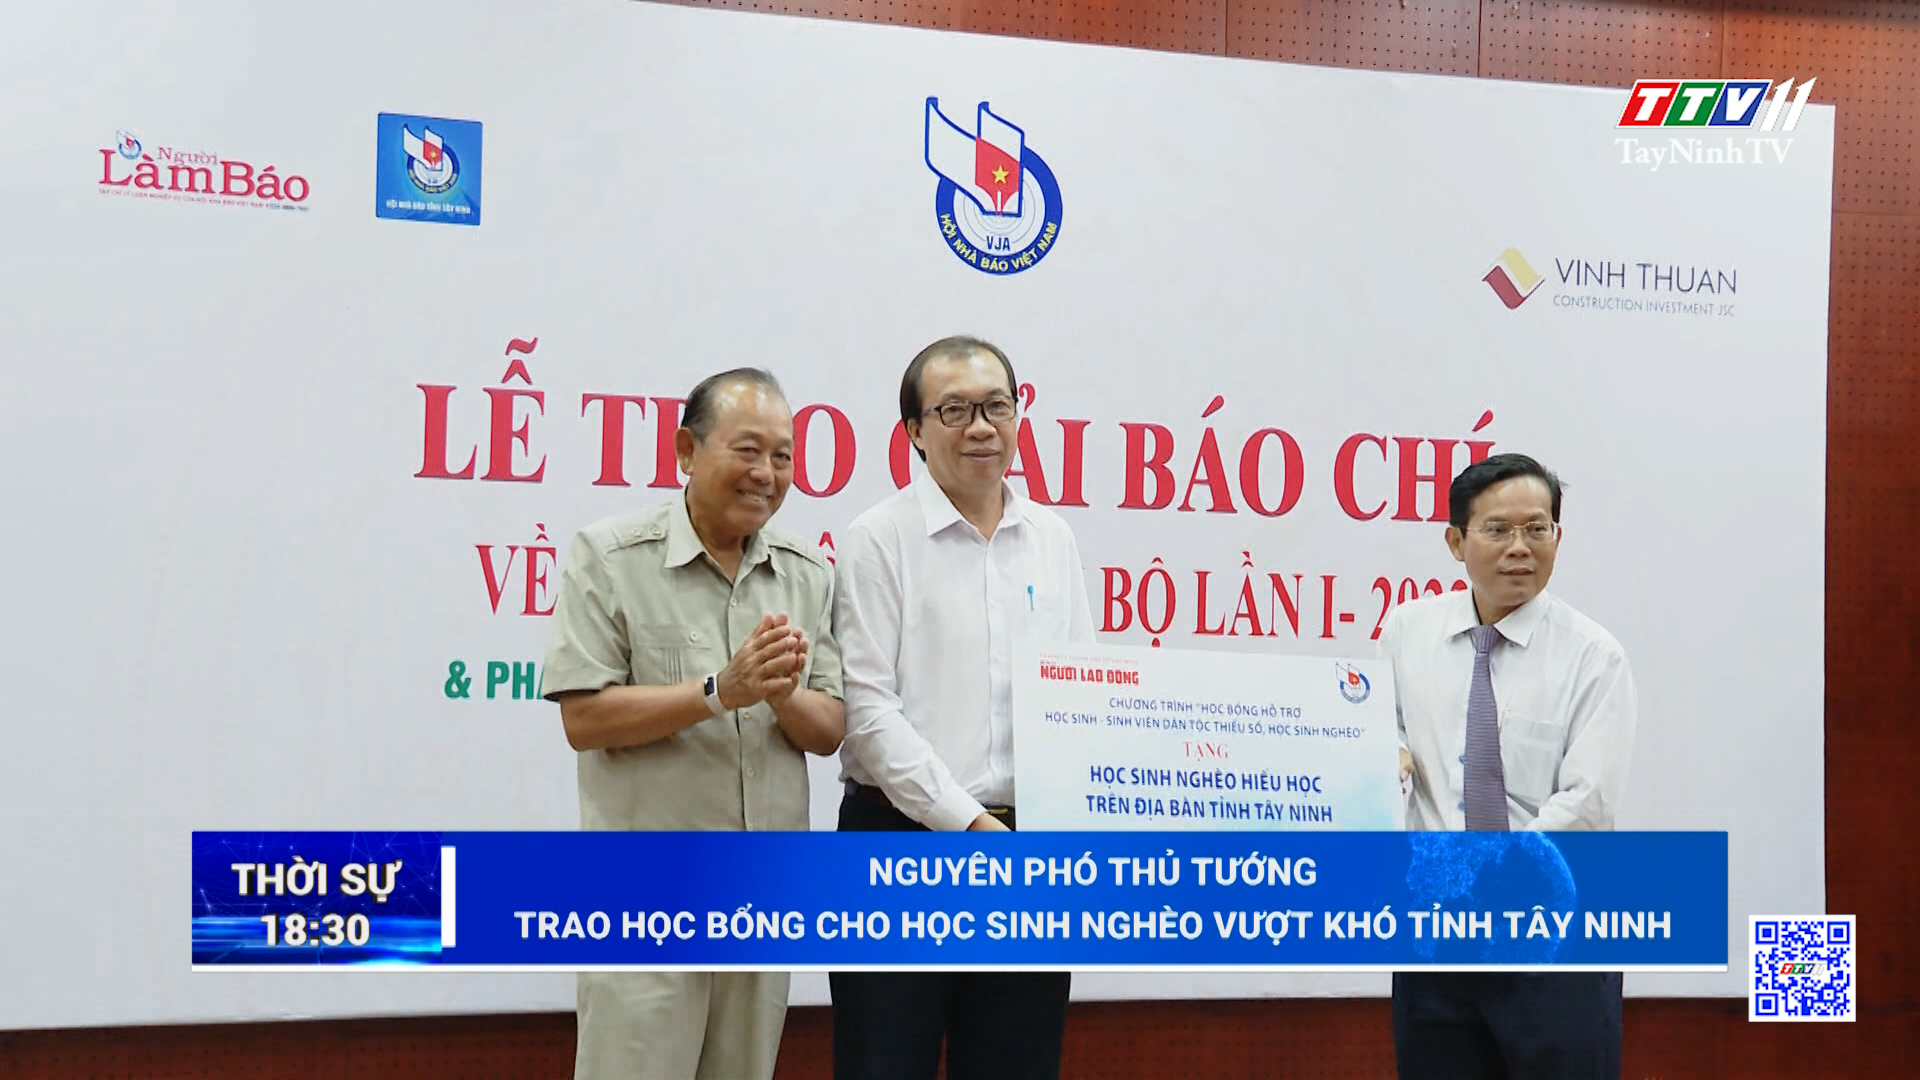 Nguyên Phó thủ tướng trao học bổng cho học sinh nghèo vượt khó tỉnh Tây Ninh | TayNinhTV